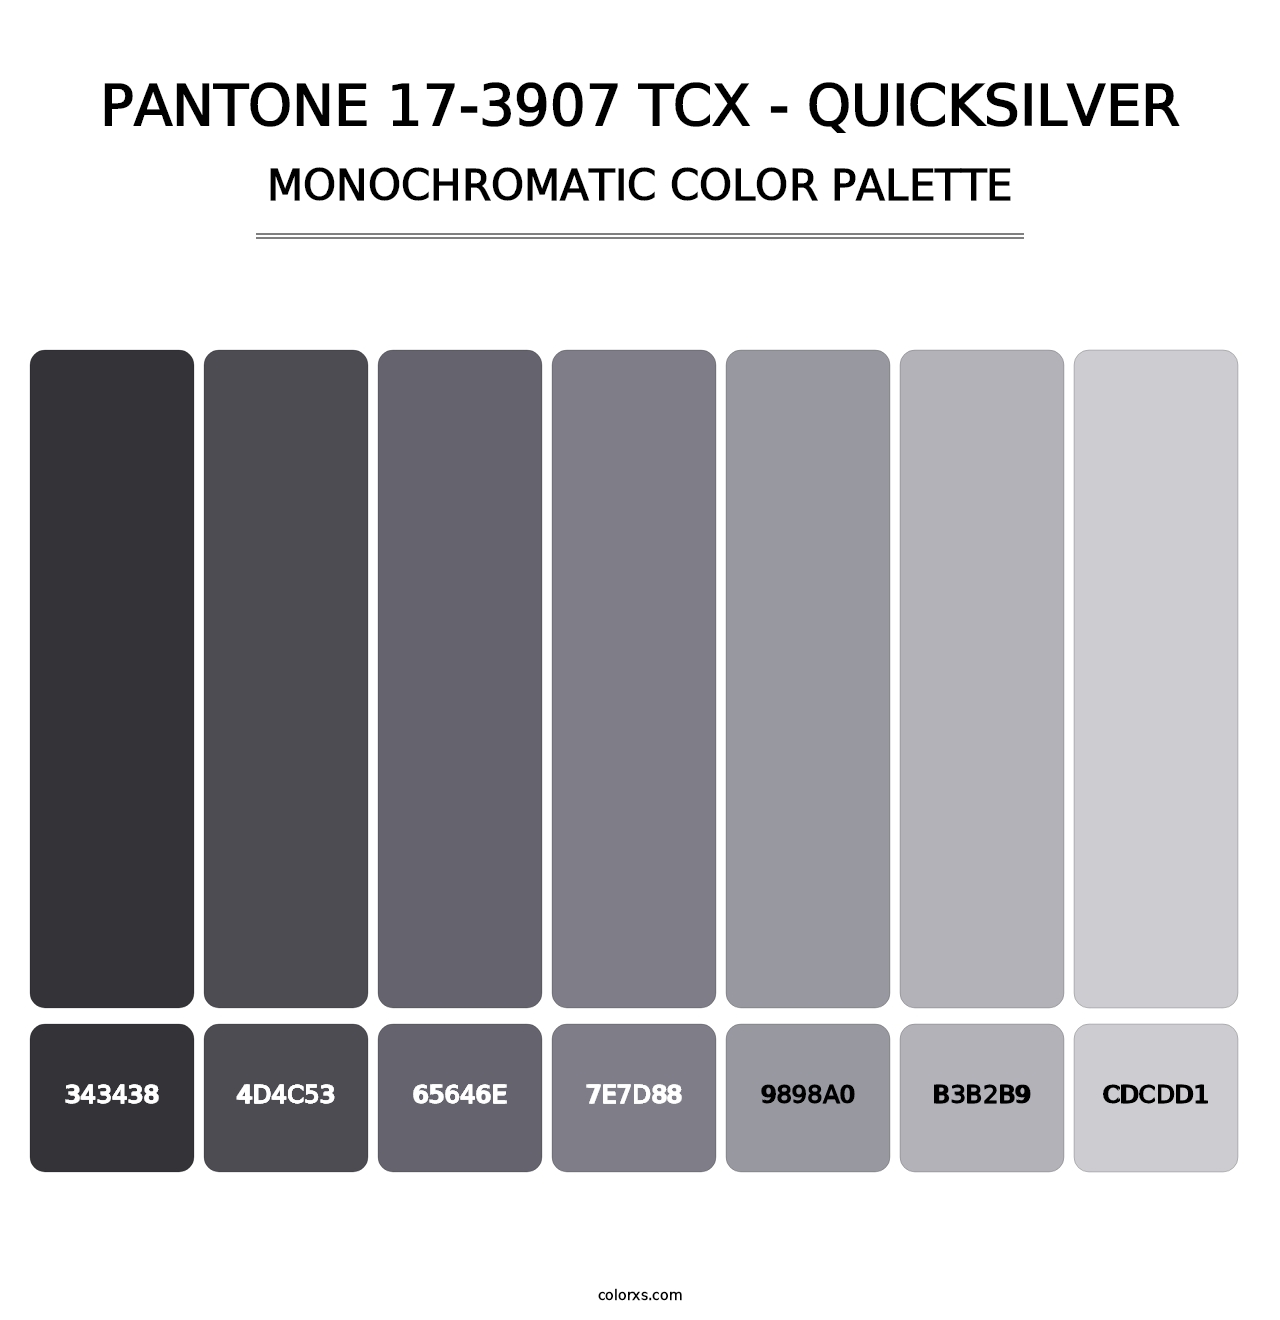 PANTONE 17-3907 TCX - Quicksilver - Monochromatic Color Palette